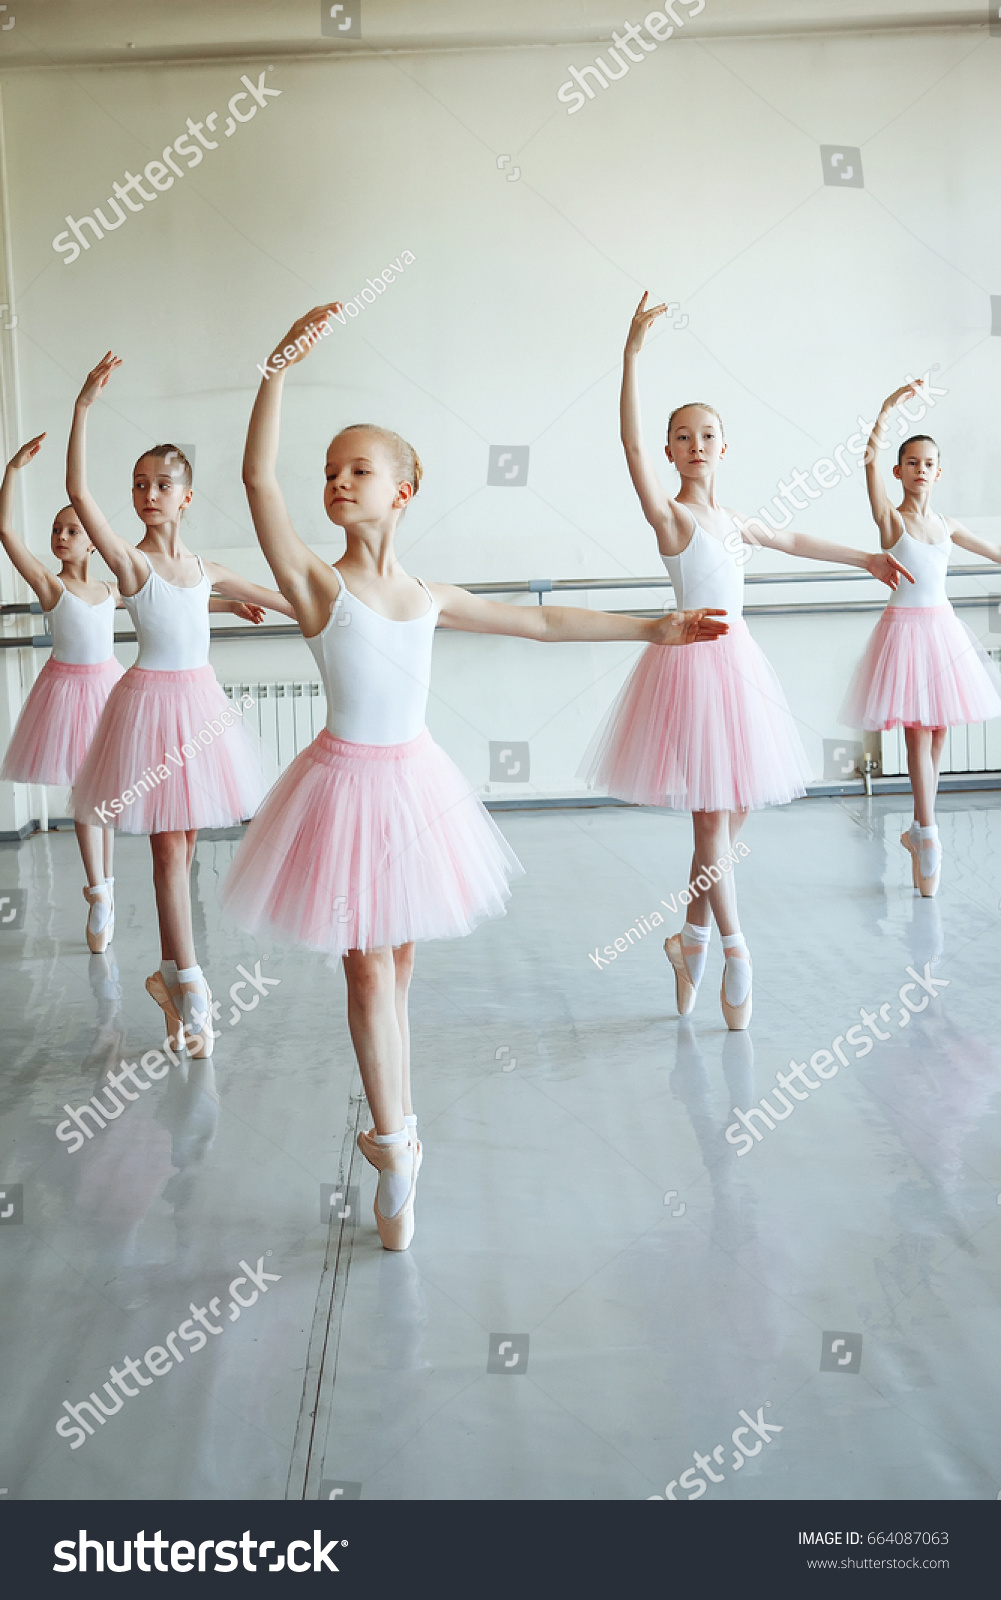 ピンクのバレエの衣装を着たかわいいバレリナとポイントの靴が部屋で踊っている ダンス教室の子ども バレエを勉強している子ども スペースをコピーします の写真素材 今すぐ編集